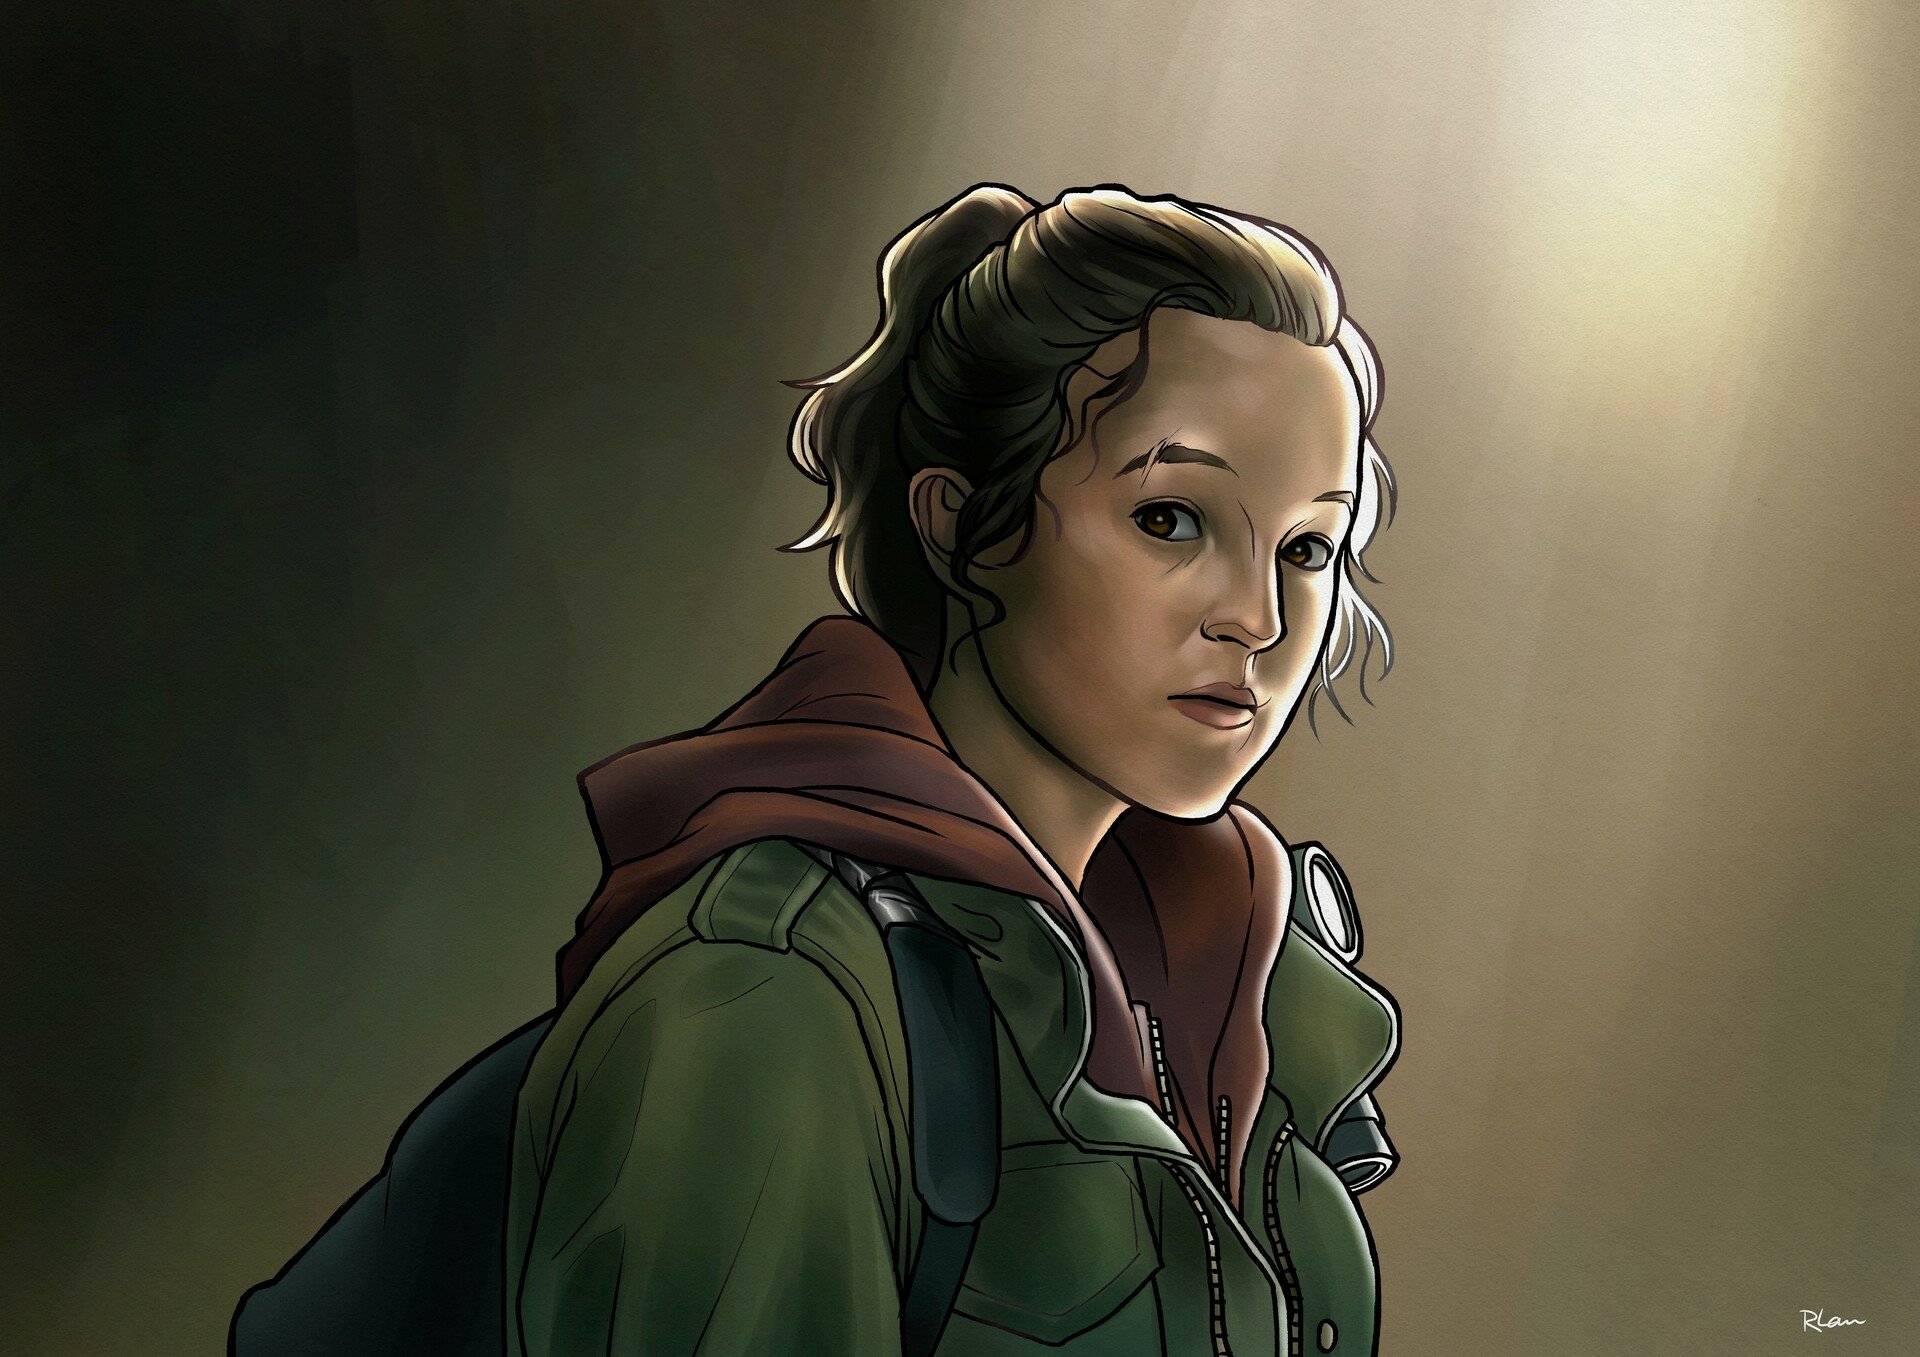 The Last of Us Series Ellie Bella Ramsey 4K Wallpaper iPhone HD Phone #7711j